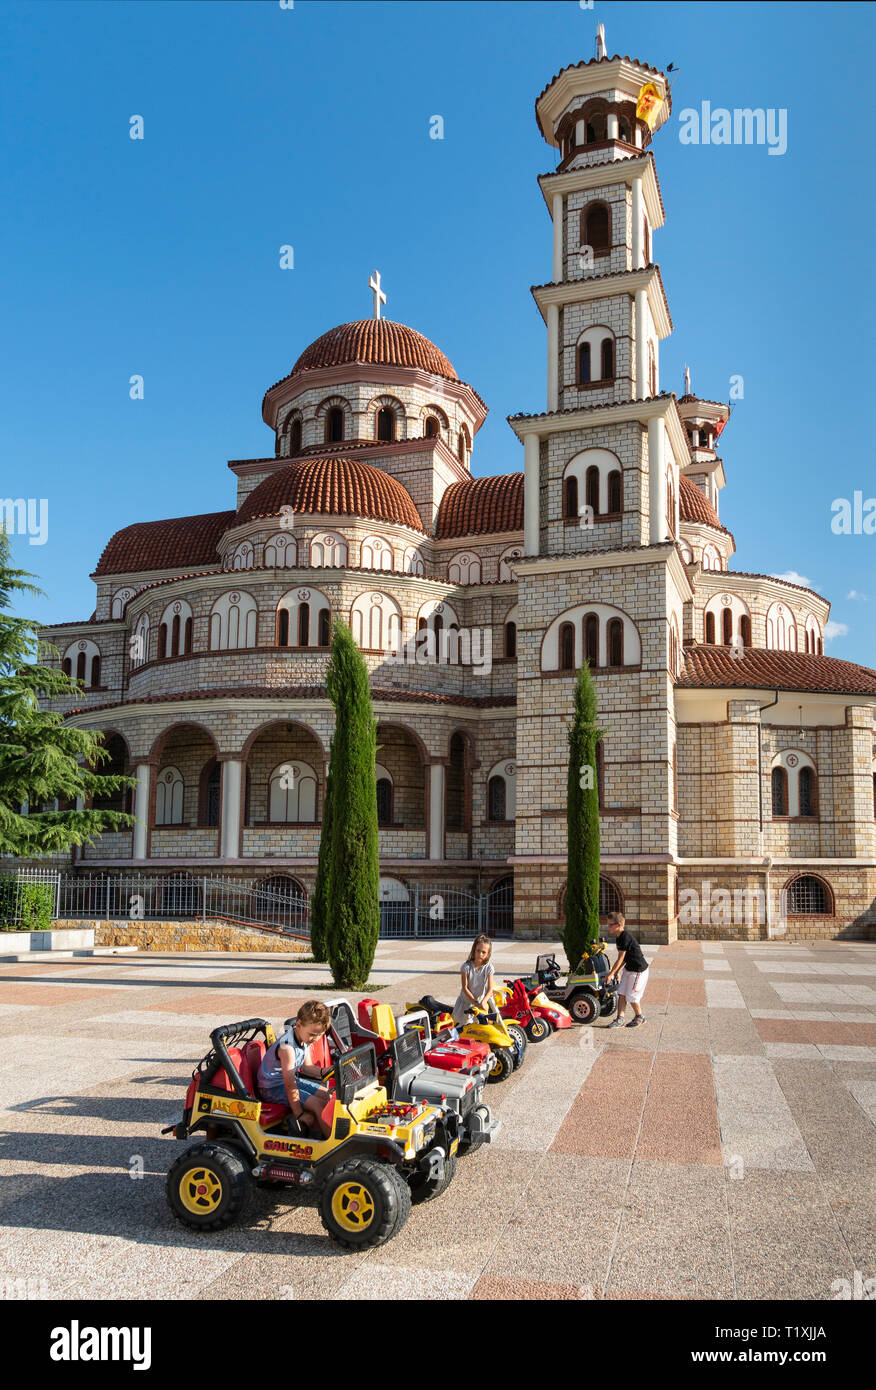 Kinder spielen auf miniatur Autos vor der Orthodoxen Kathedrale und Korca Korca, Südosteuropa Albanien. Stockfoto